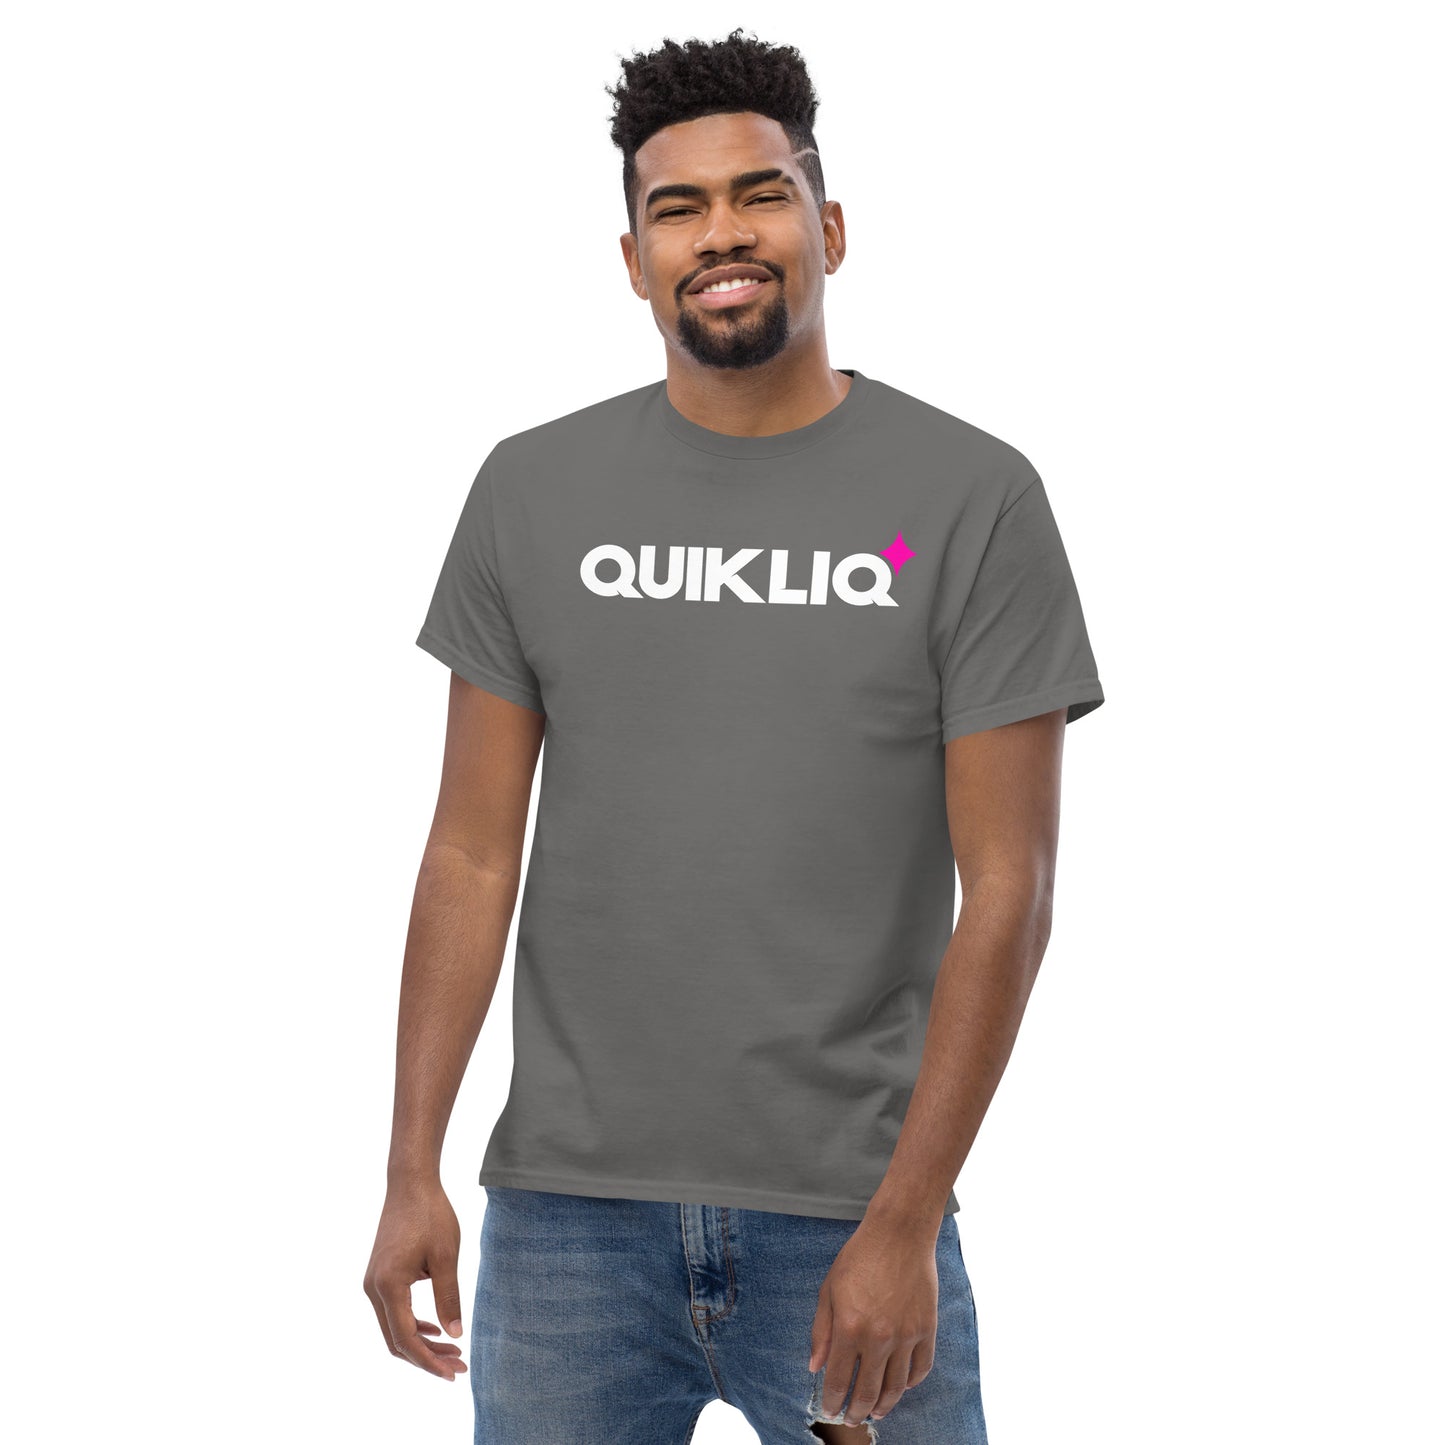 QuikLiq Classic Tee